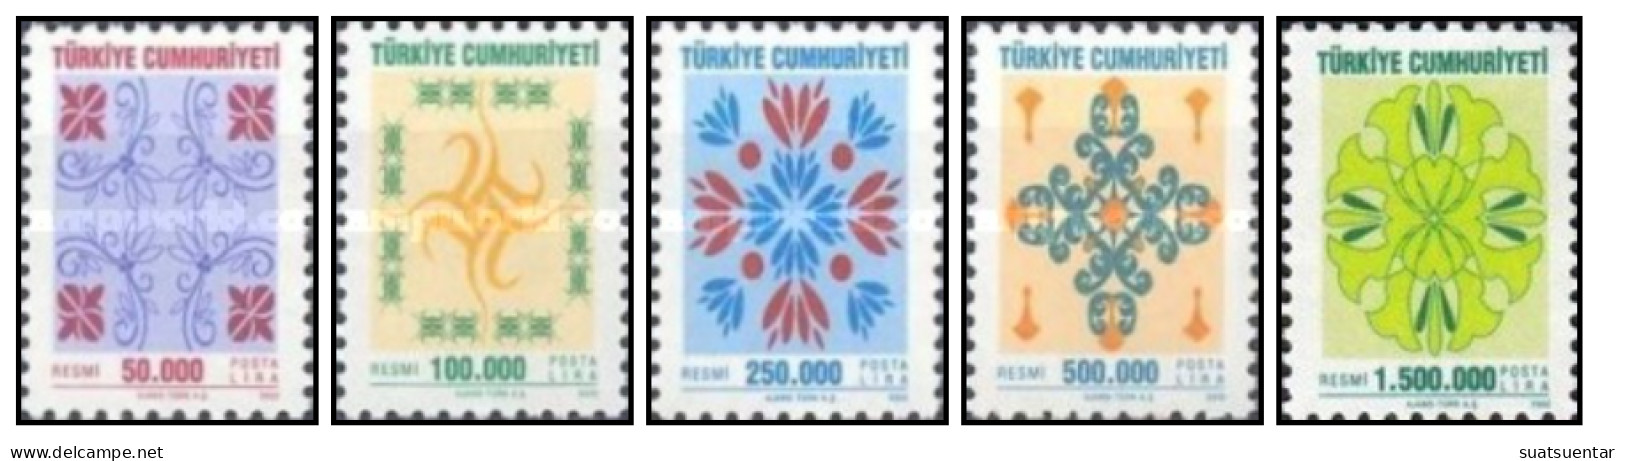 2002 Official Stamps - New Designs MNH - Francobolli Di Servizio